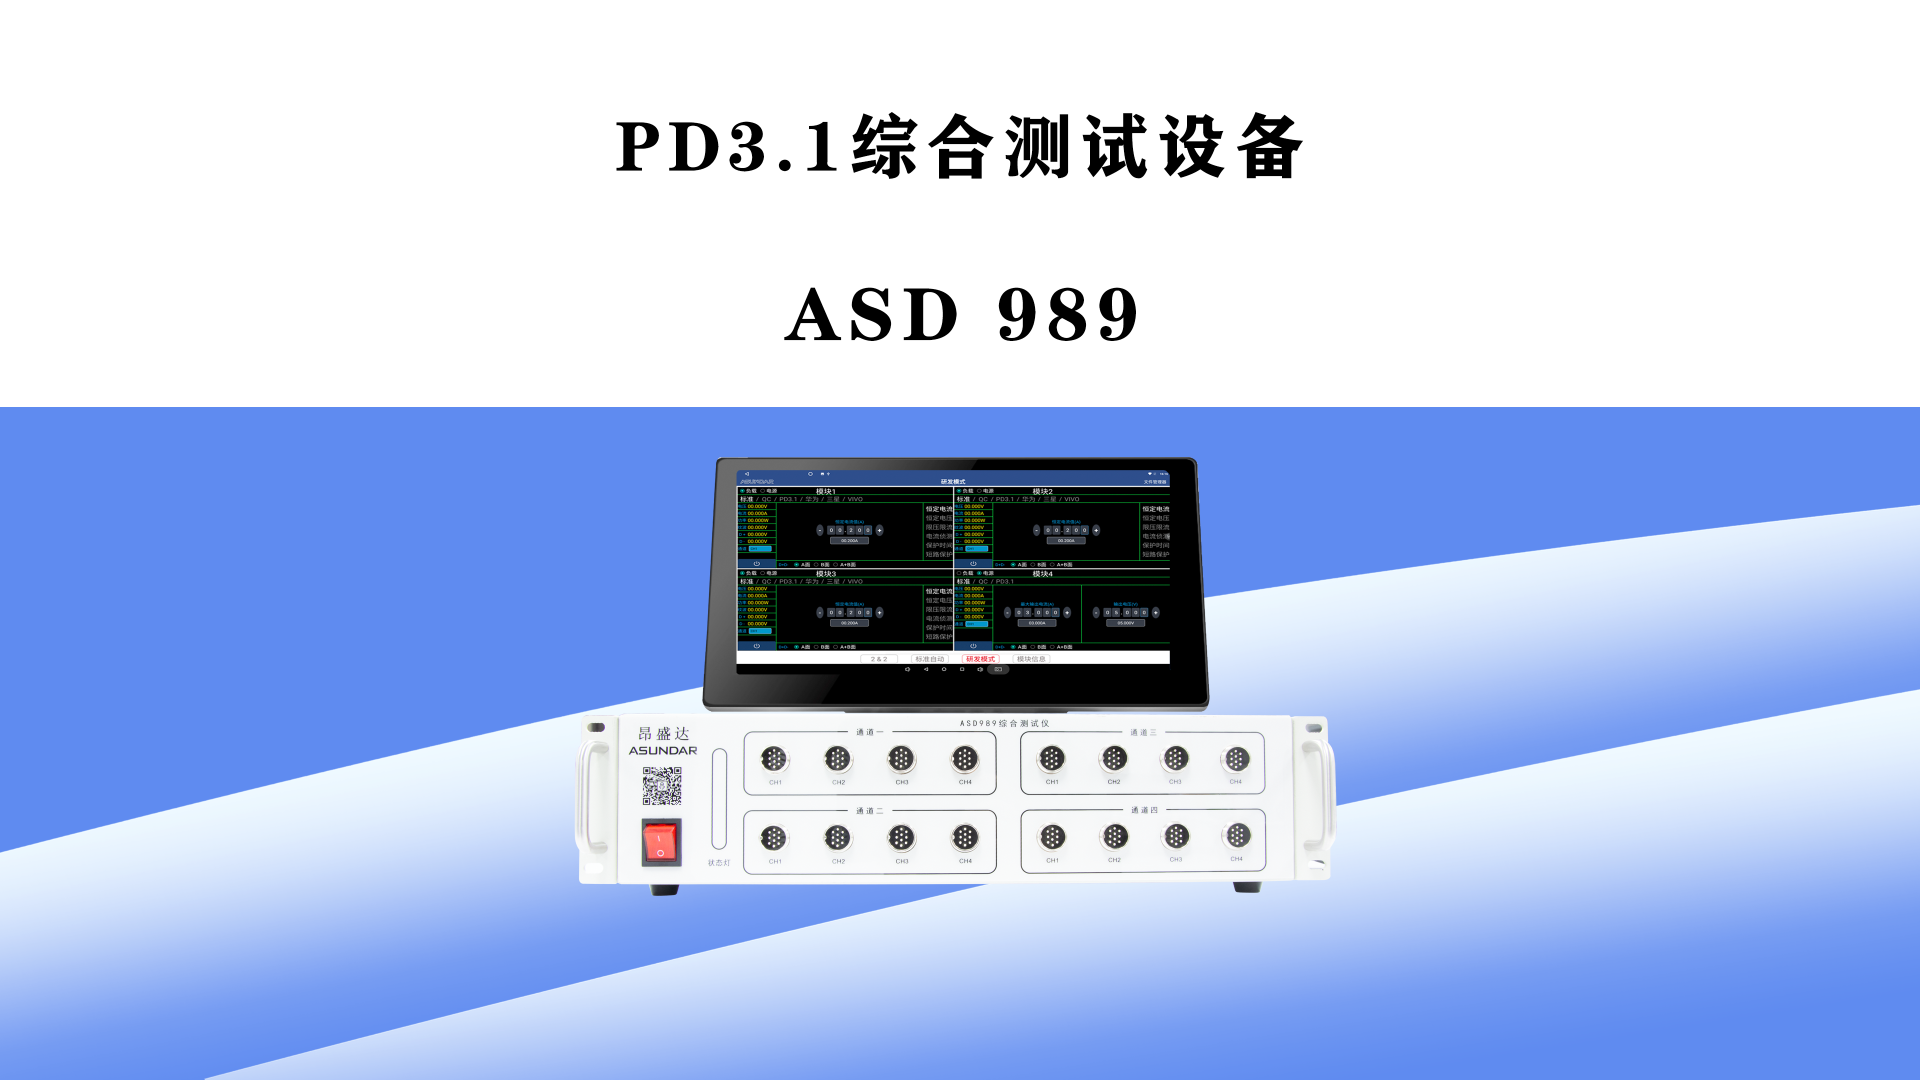 昂盛达推出PD3.1系列新品及大功率模拟电池-充电头网